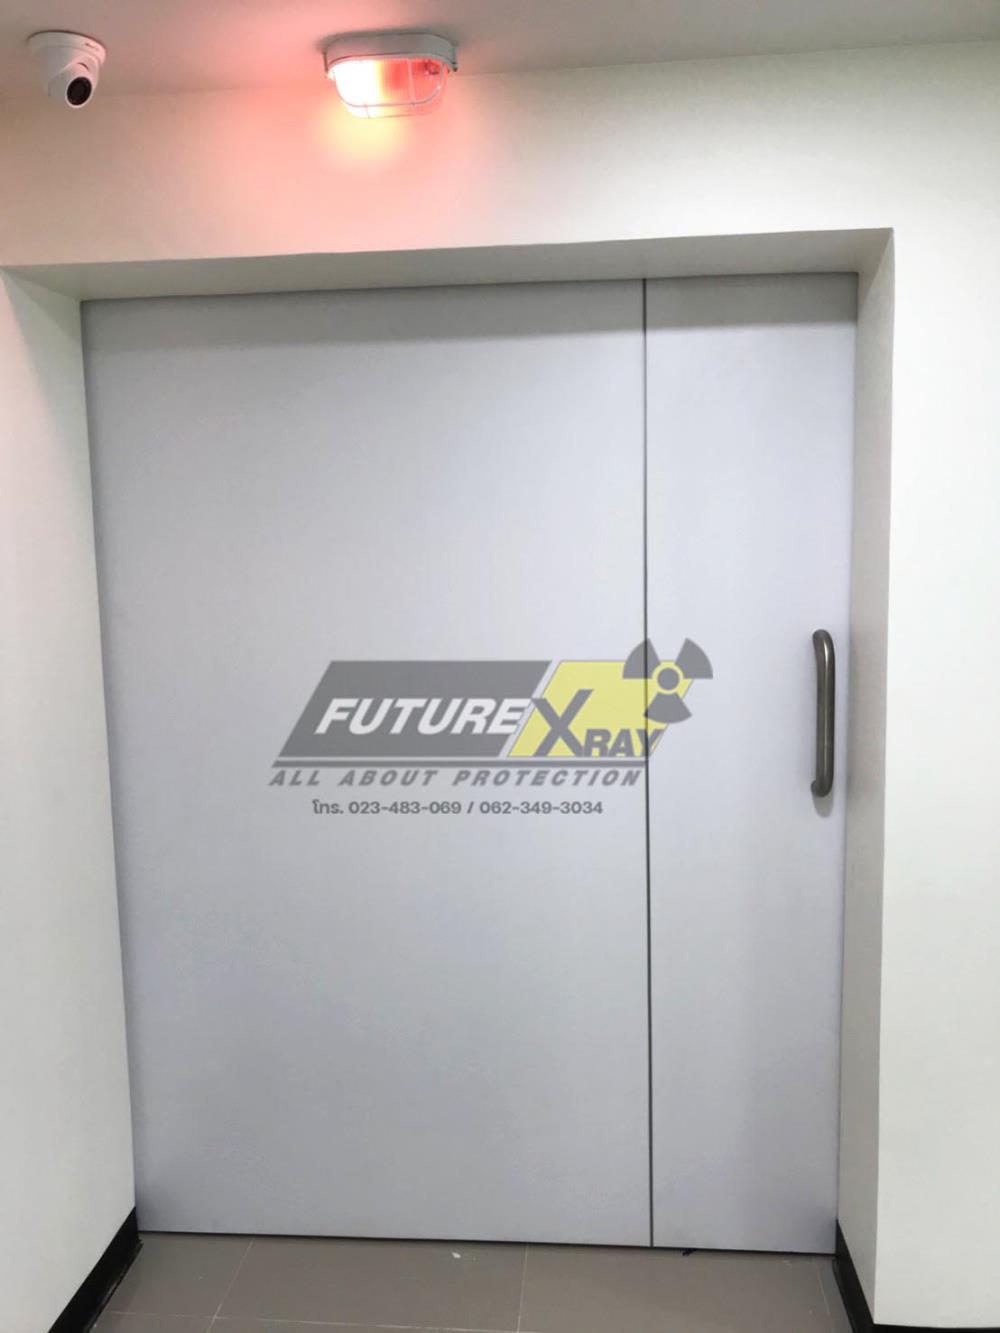 ประตูกันรังสีห้องเอกซเรย์ ,ประตูกันรังสี ,ประตูห้องเอกซเรย์ , ประตูป้องกันรังสีเอ็กซเรย์ , x-ray door,Future-Xray,Plant and Facility Equipment/Building Products/Doors